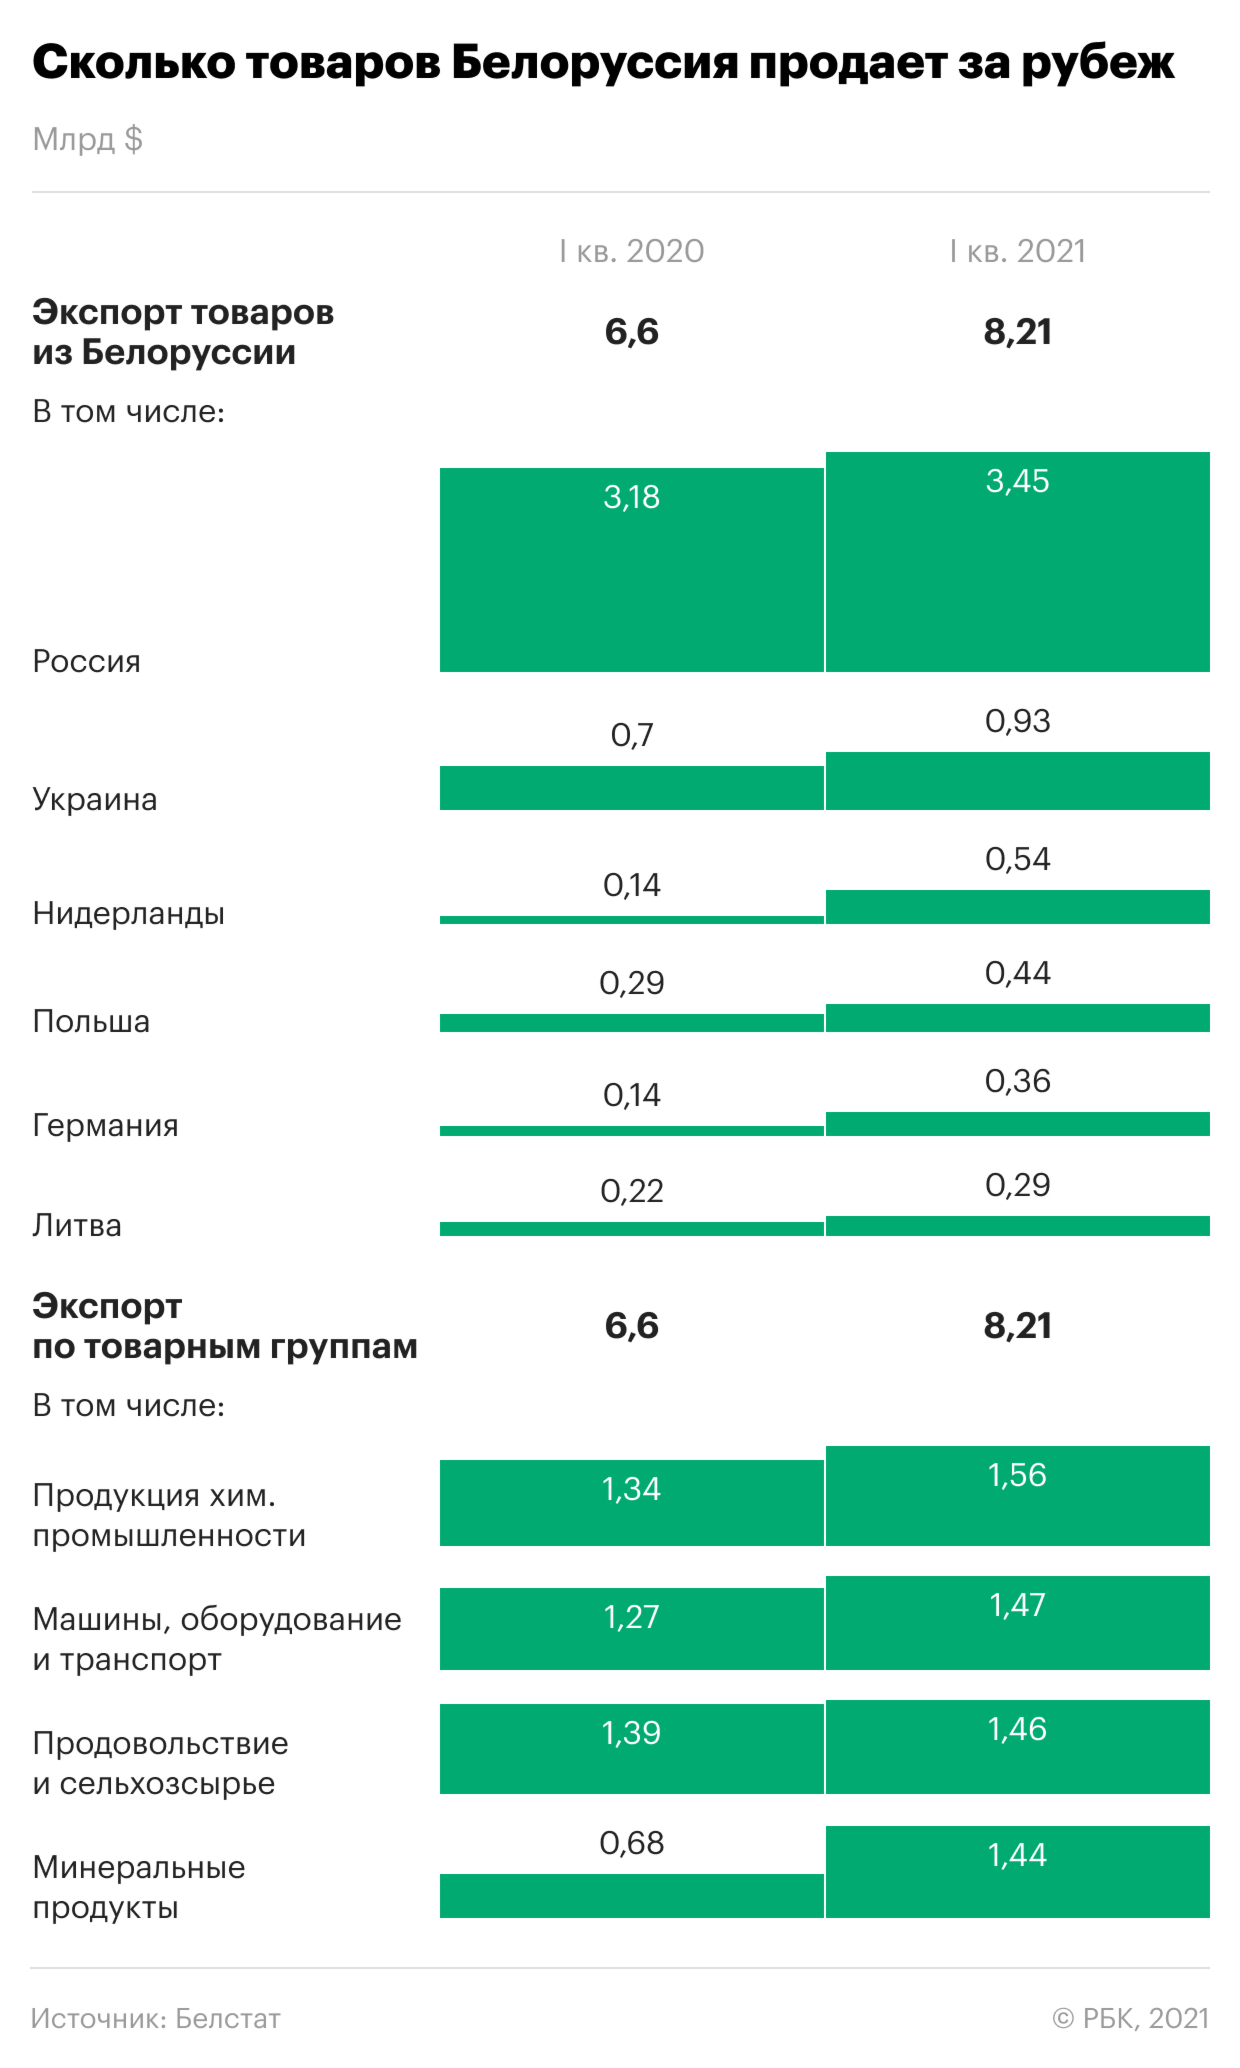 Что может потерять белорусская экономика из-за санкций Запада. Главное